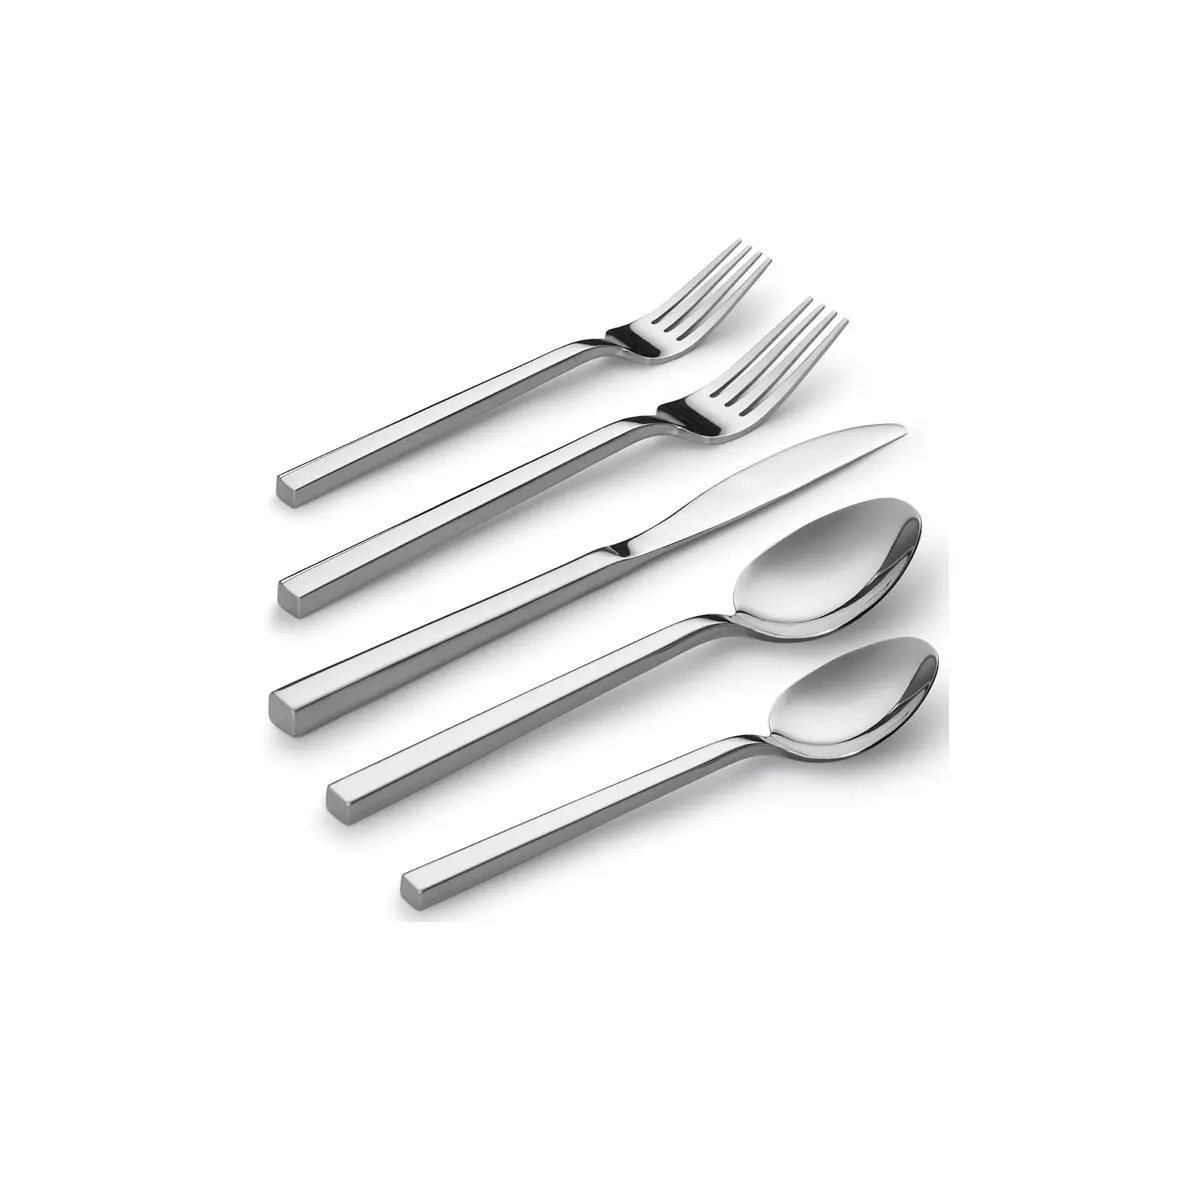 Desain baru Set sendok garpu logam kualitas tinggi terbuat dari logam murni Set sendok buatan tangan bergaya mewah